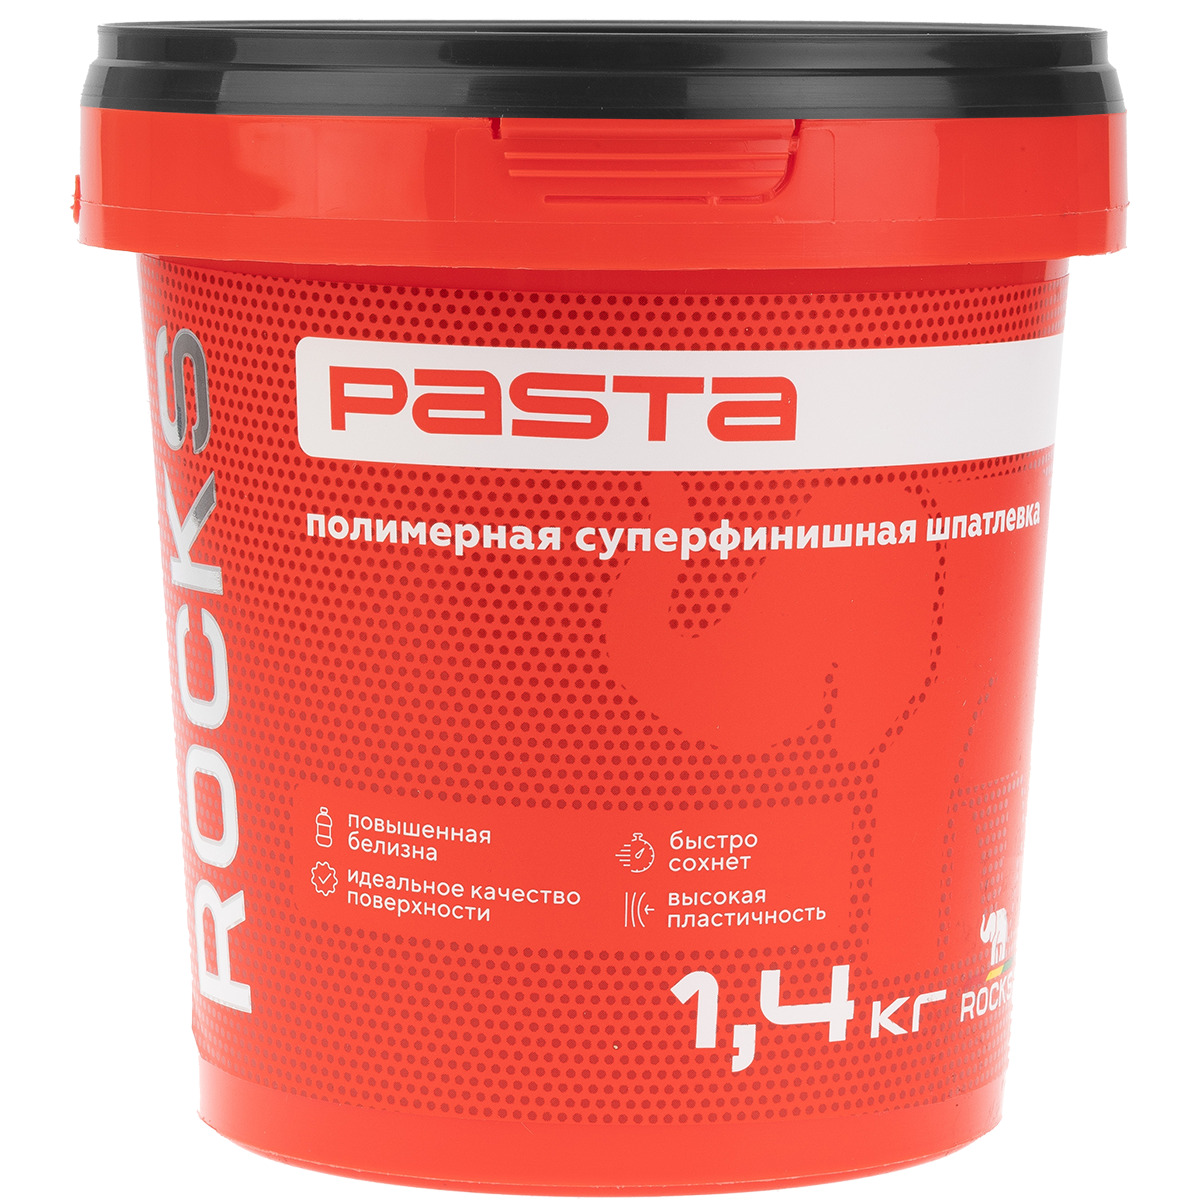 Шпатлевка полимерная Rocks Pasta суперфинишная трещиностойкая 1,4 кг, цвет белый